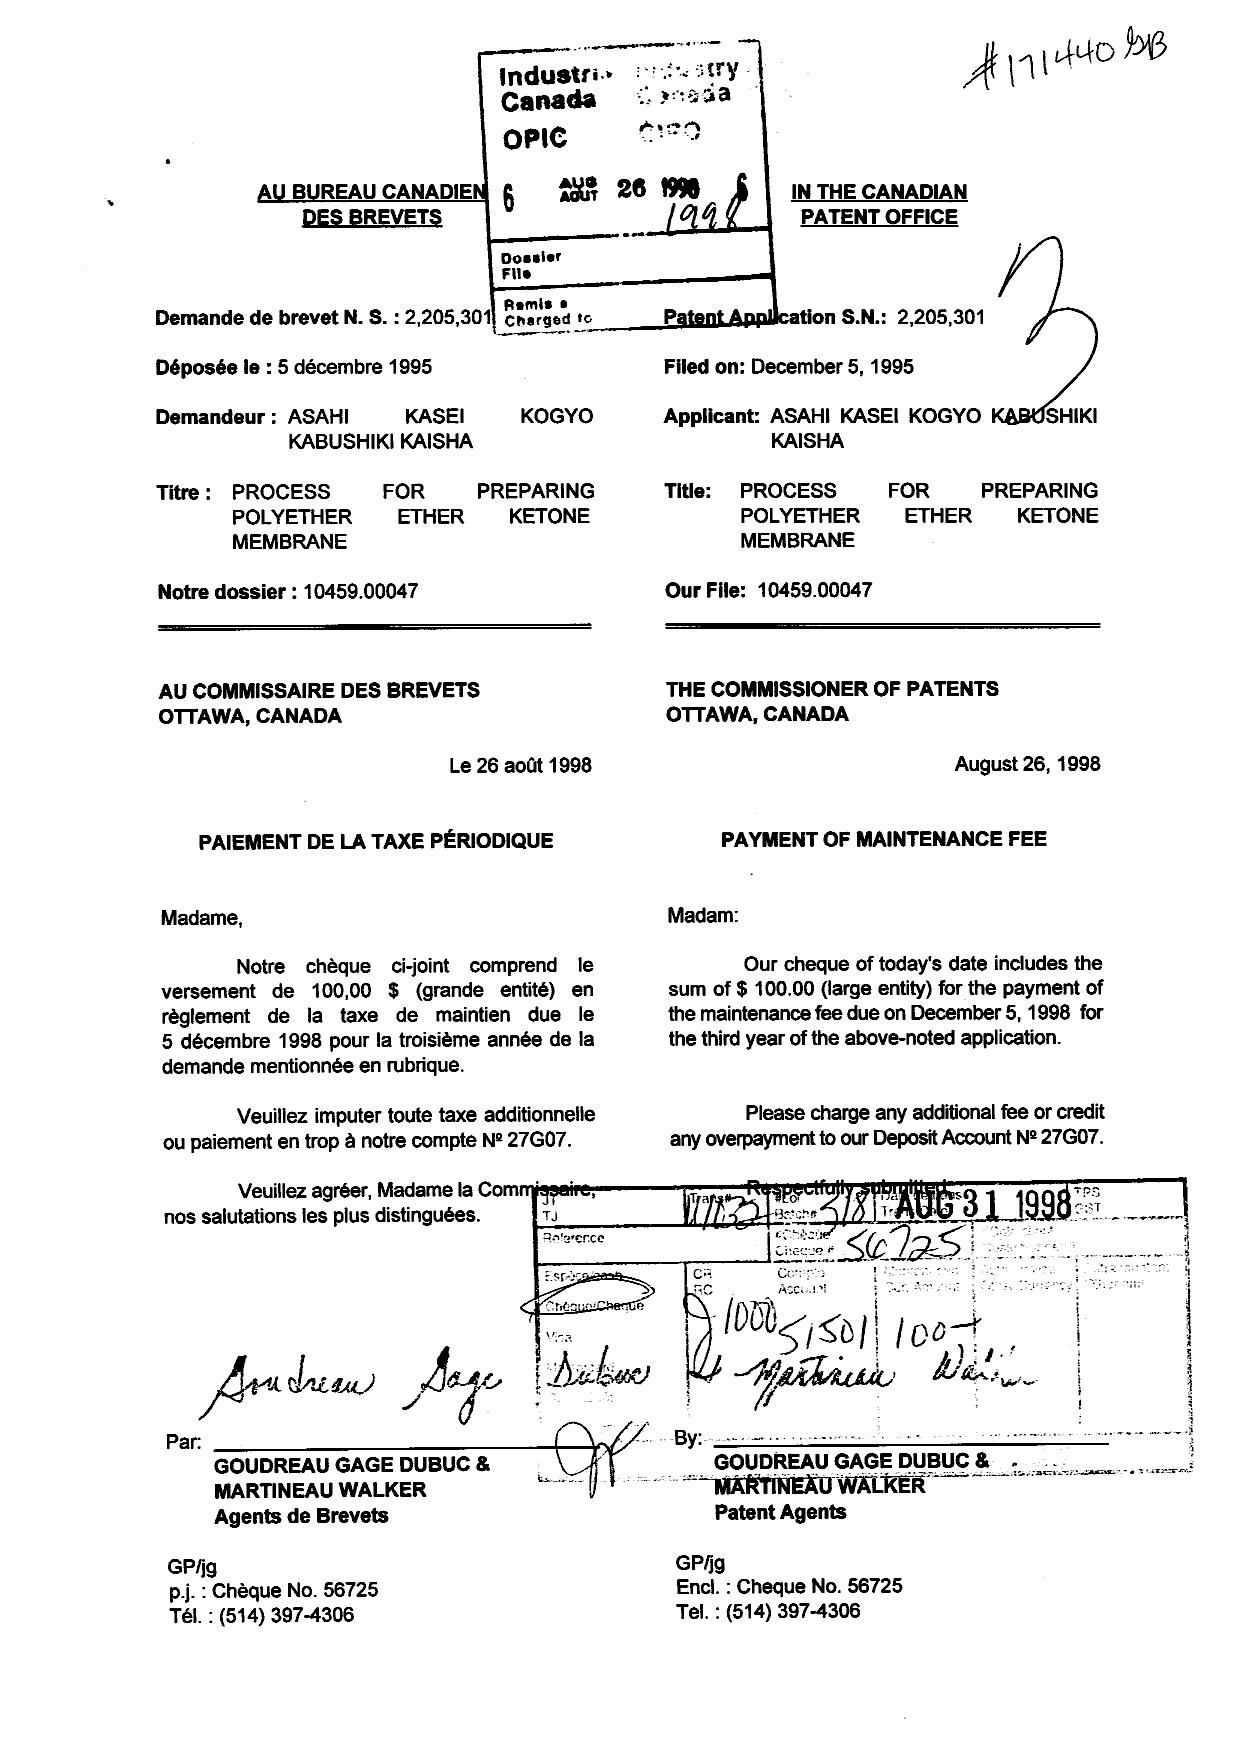 Document de brevet canadien 2205301. Taxes 19980826. Image 1 de 1